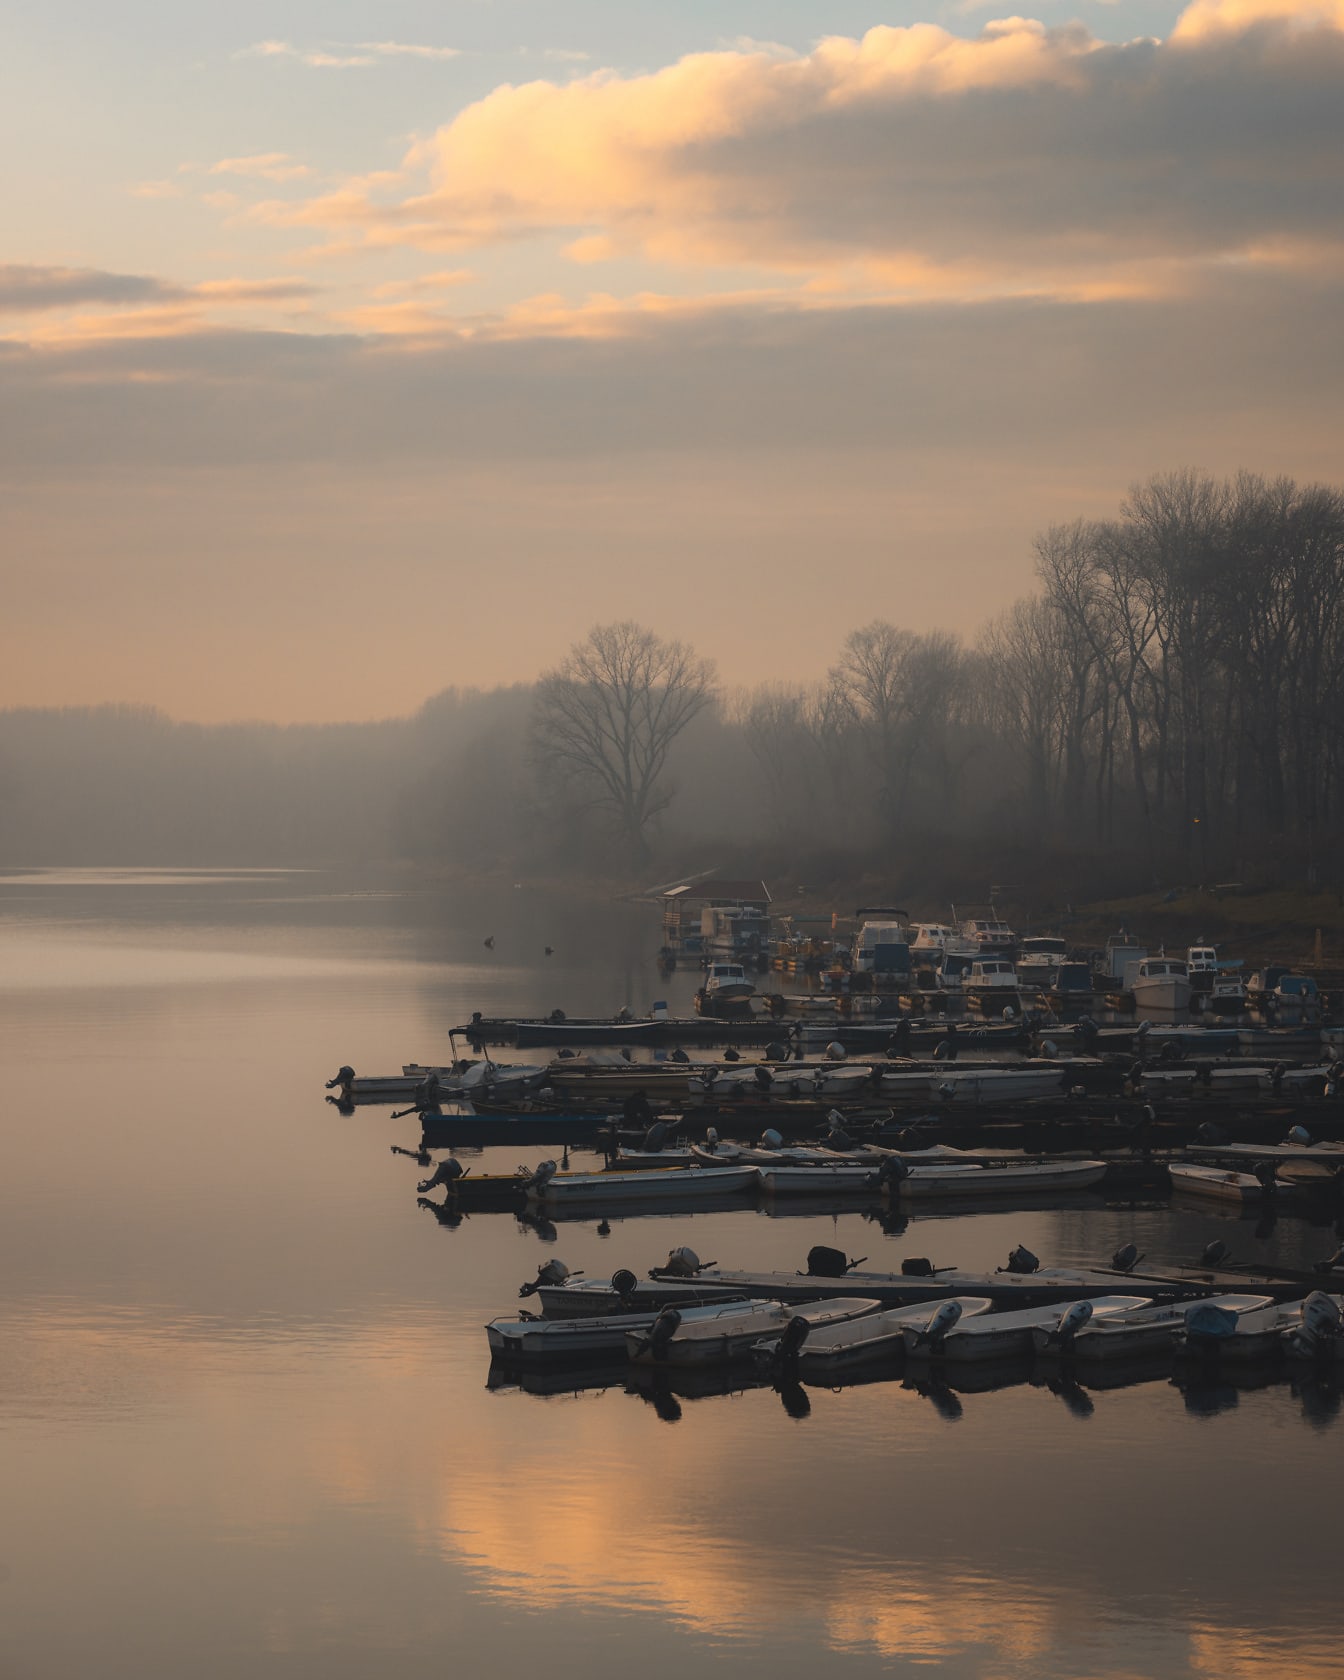 Balıkçı tekneleri ile göl limanında görkemli sisli sabah